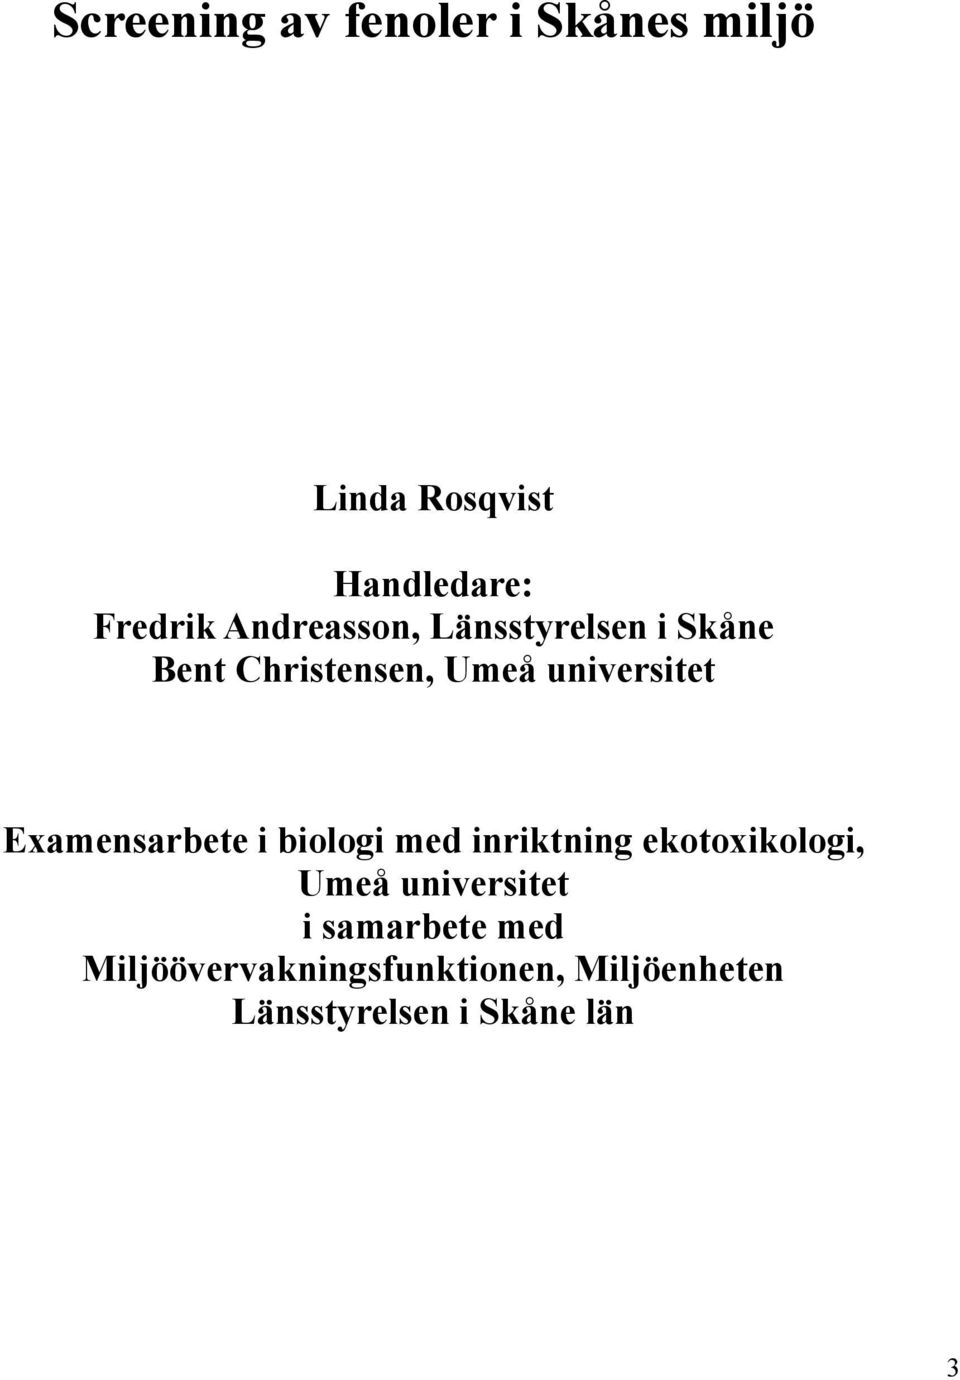 Examensarbete i biologi med inriktning ekotoxikologi, Umeå universitet i